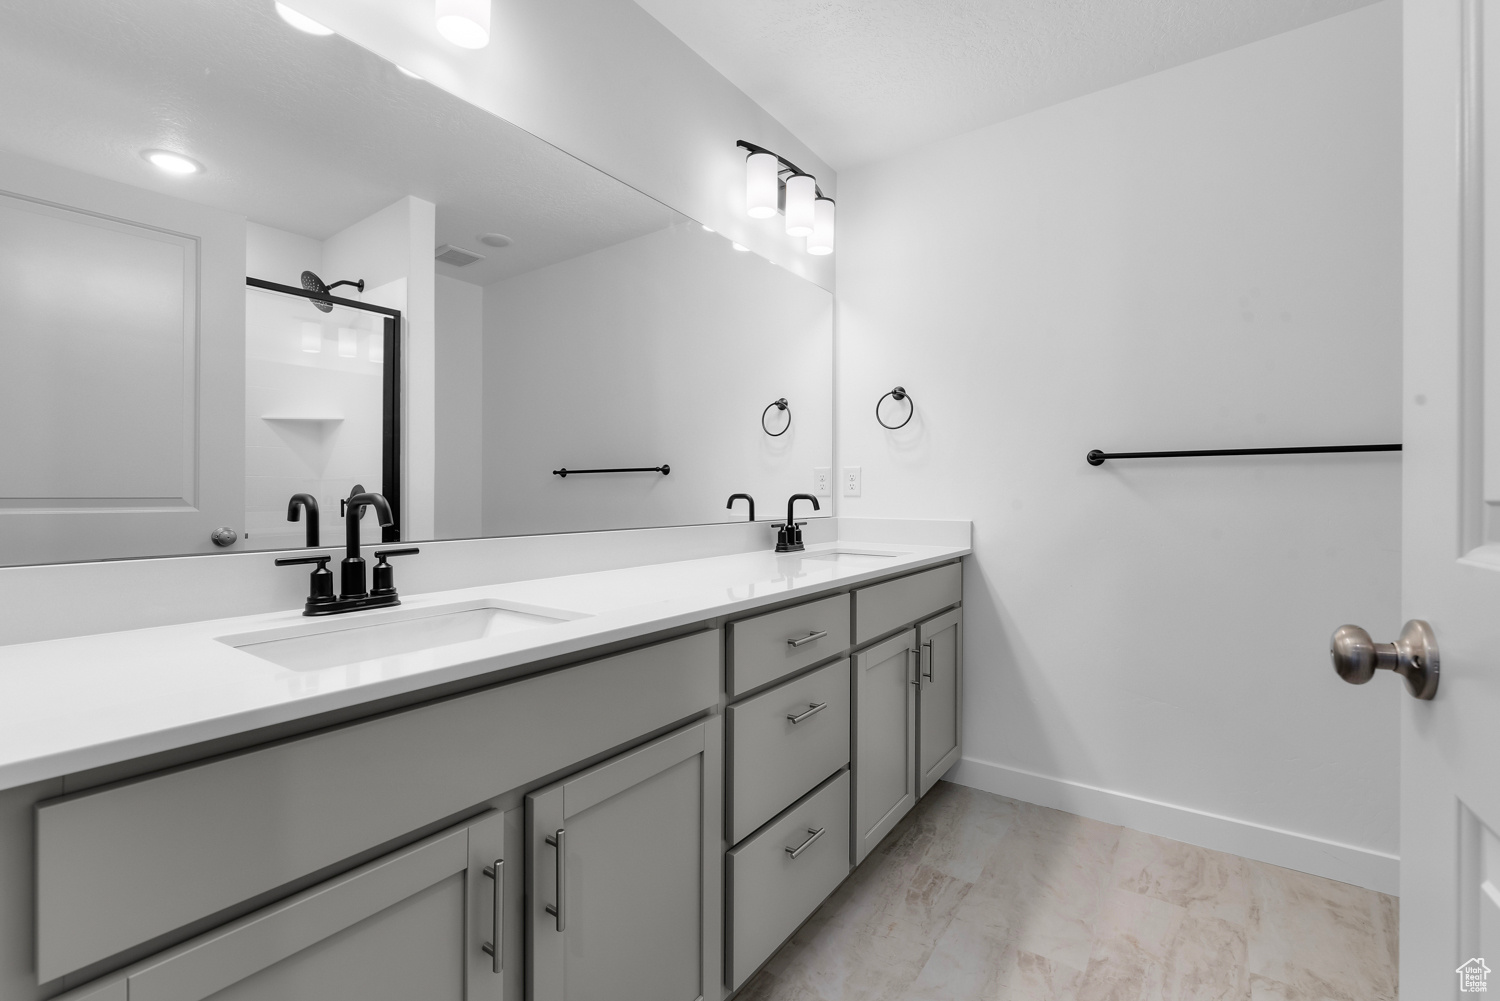 Bathroom featuring dual vanity